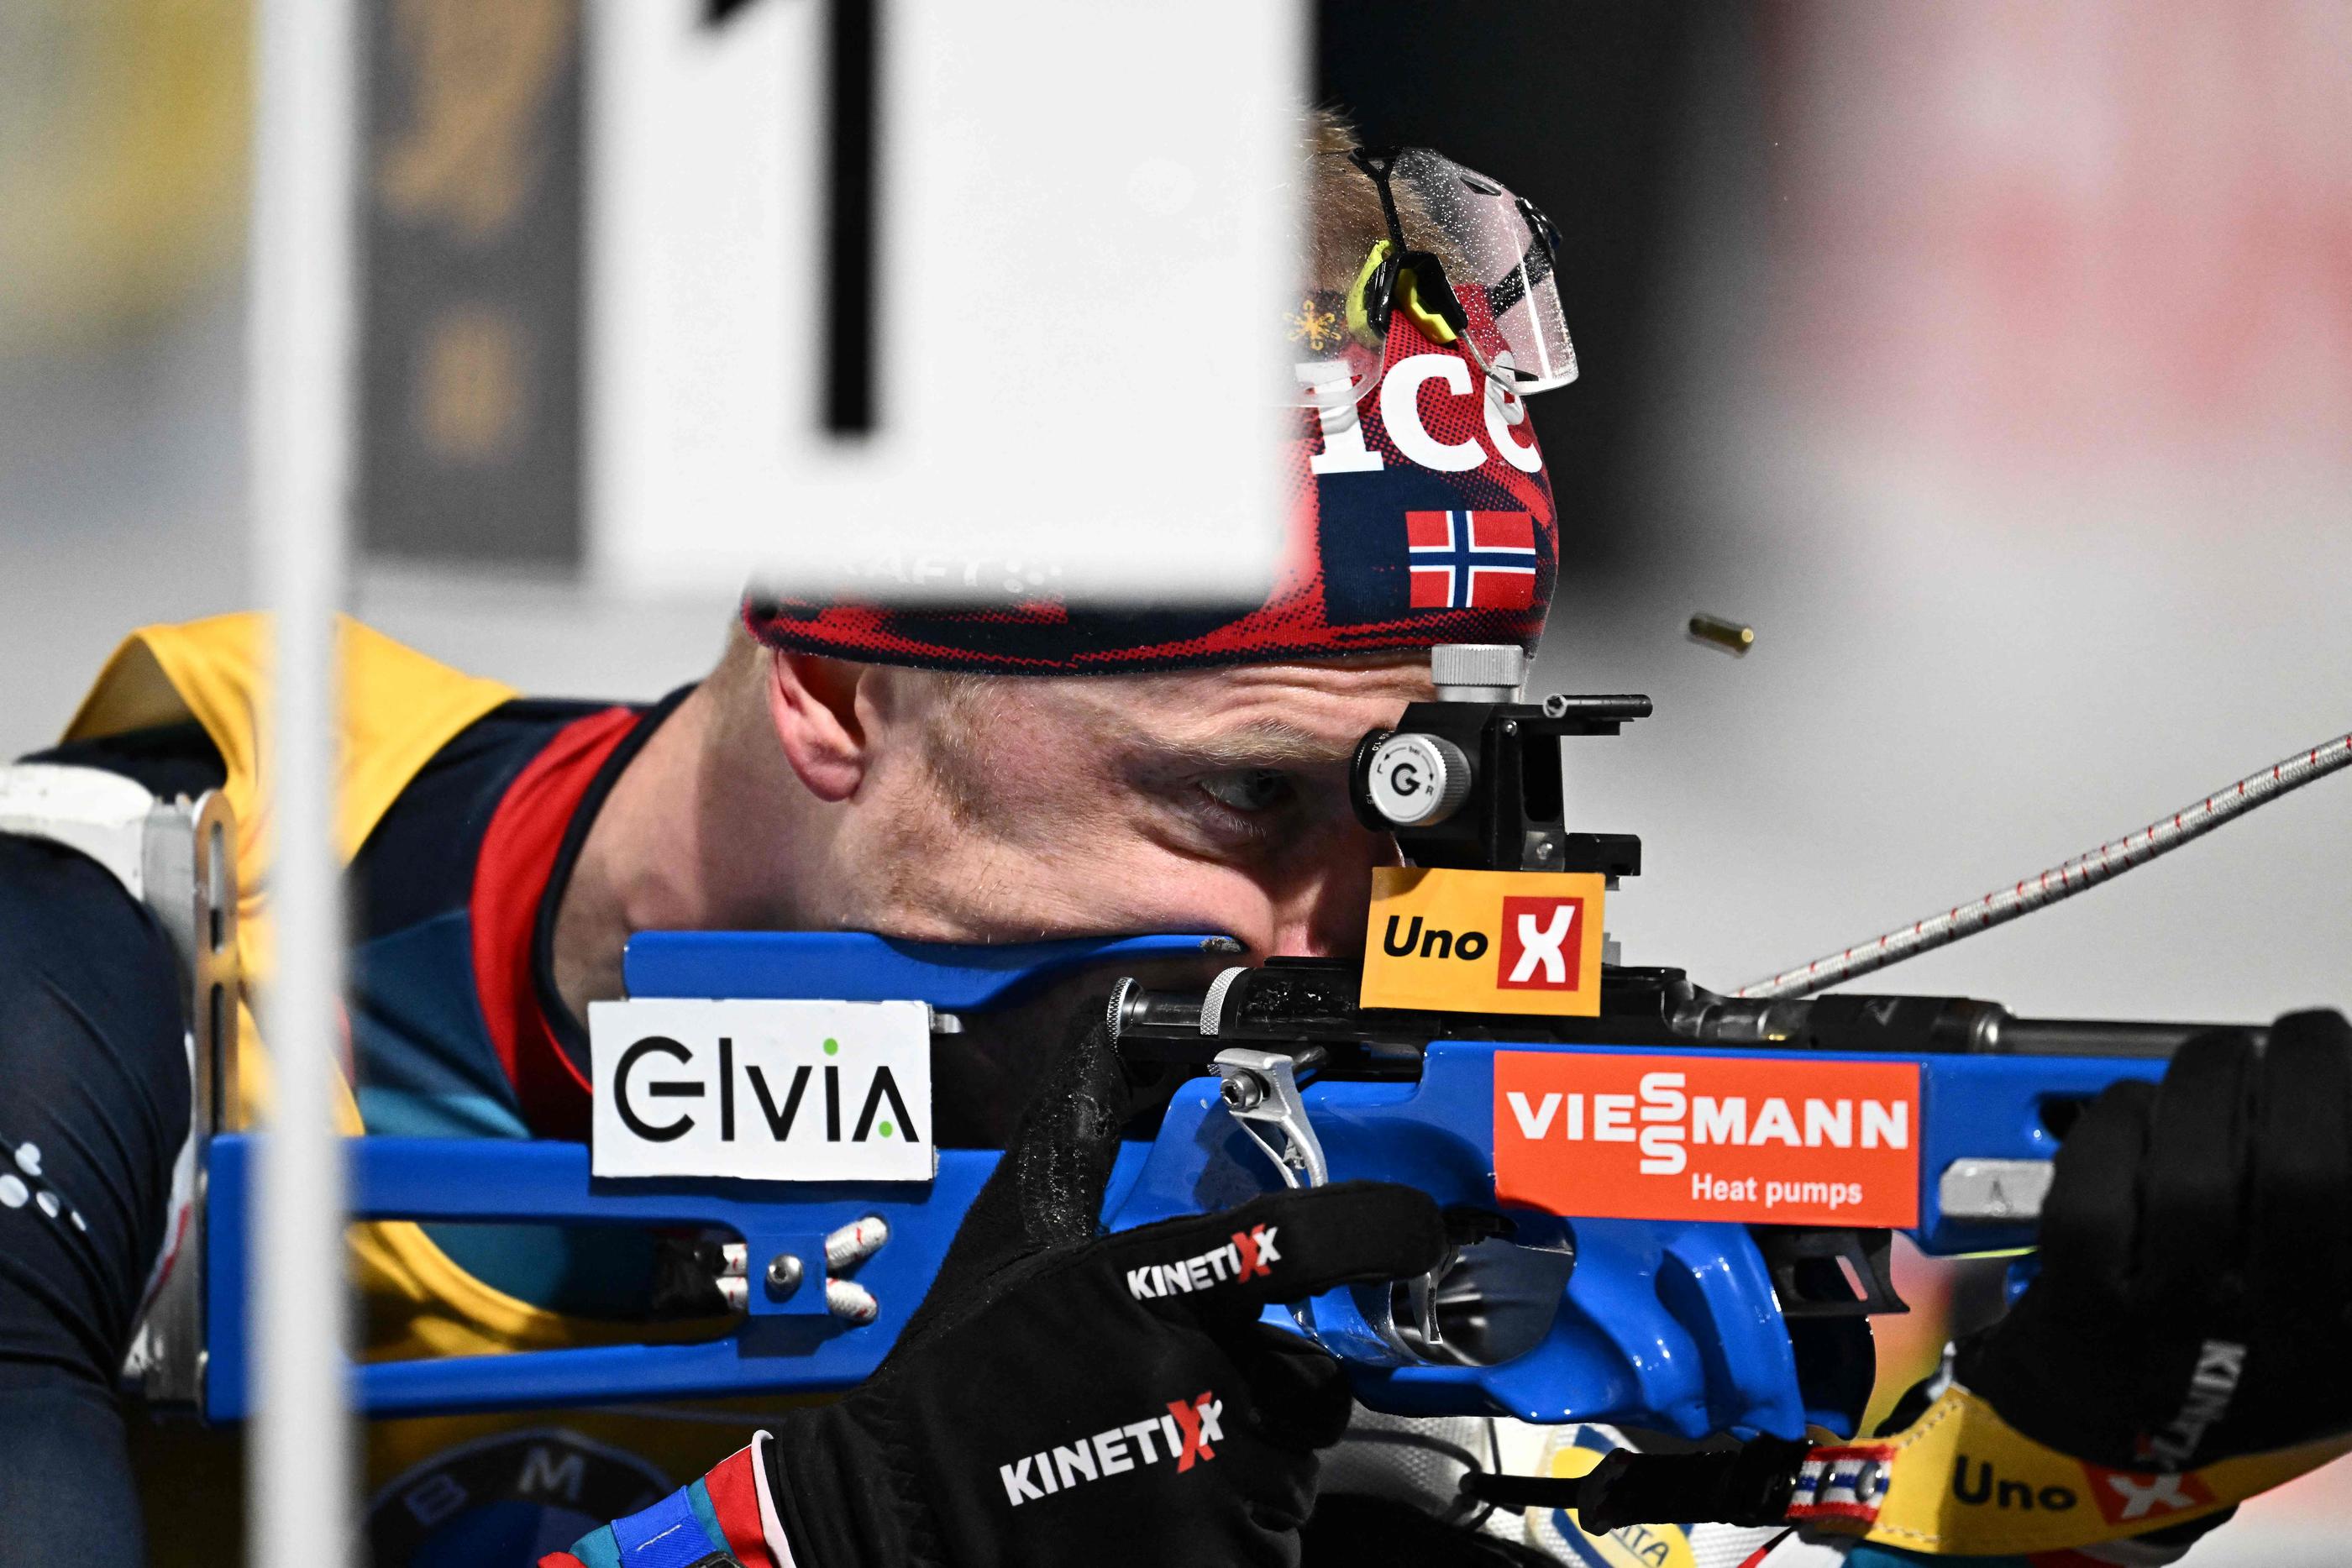  Johannes Boe a conservé son titre de champion du monde de poursuite, ce dimanche (Joe Klamar / AFP).